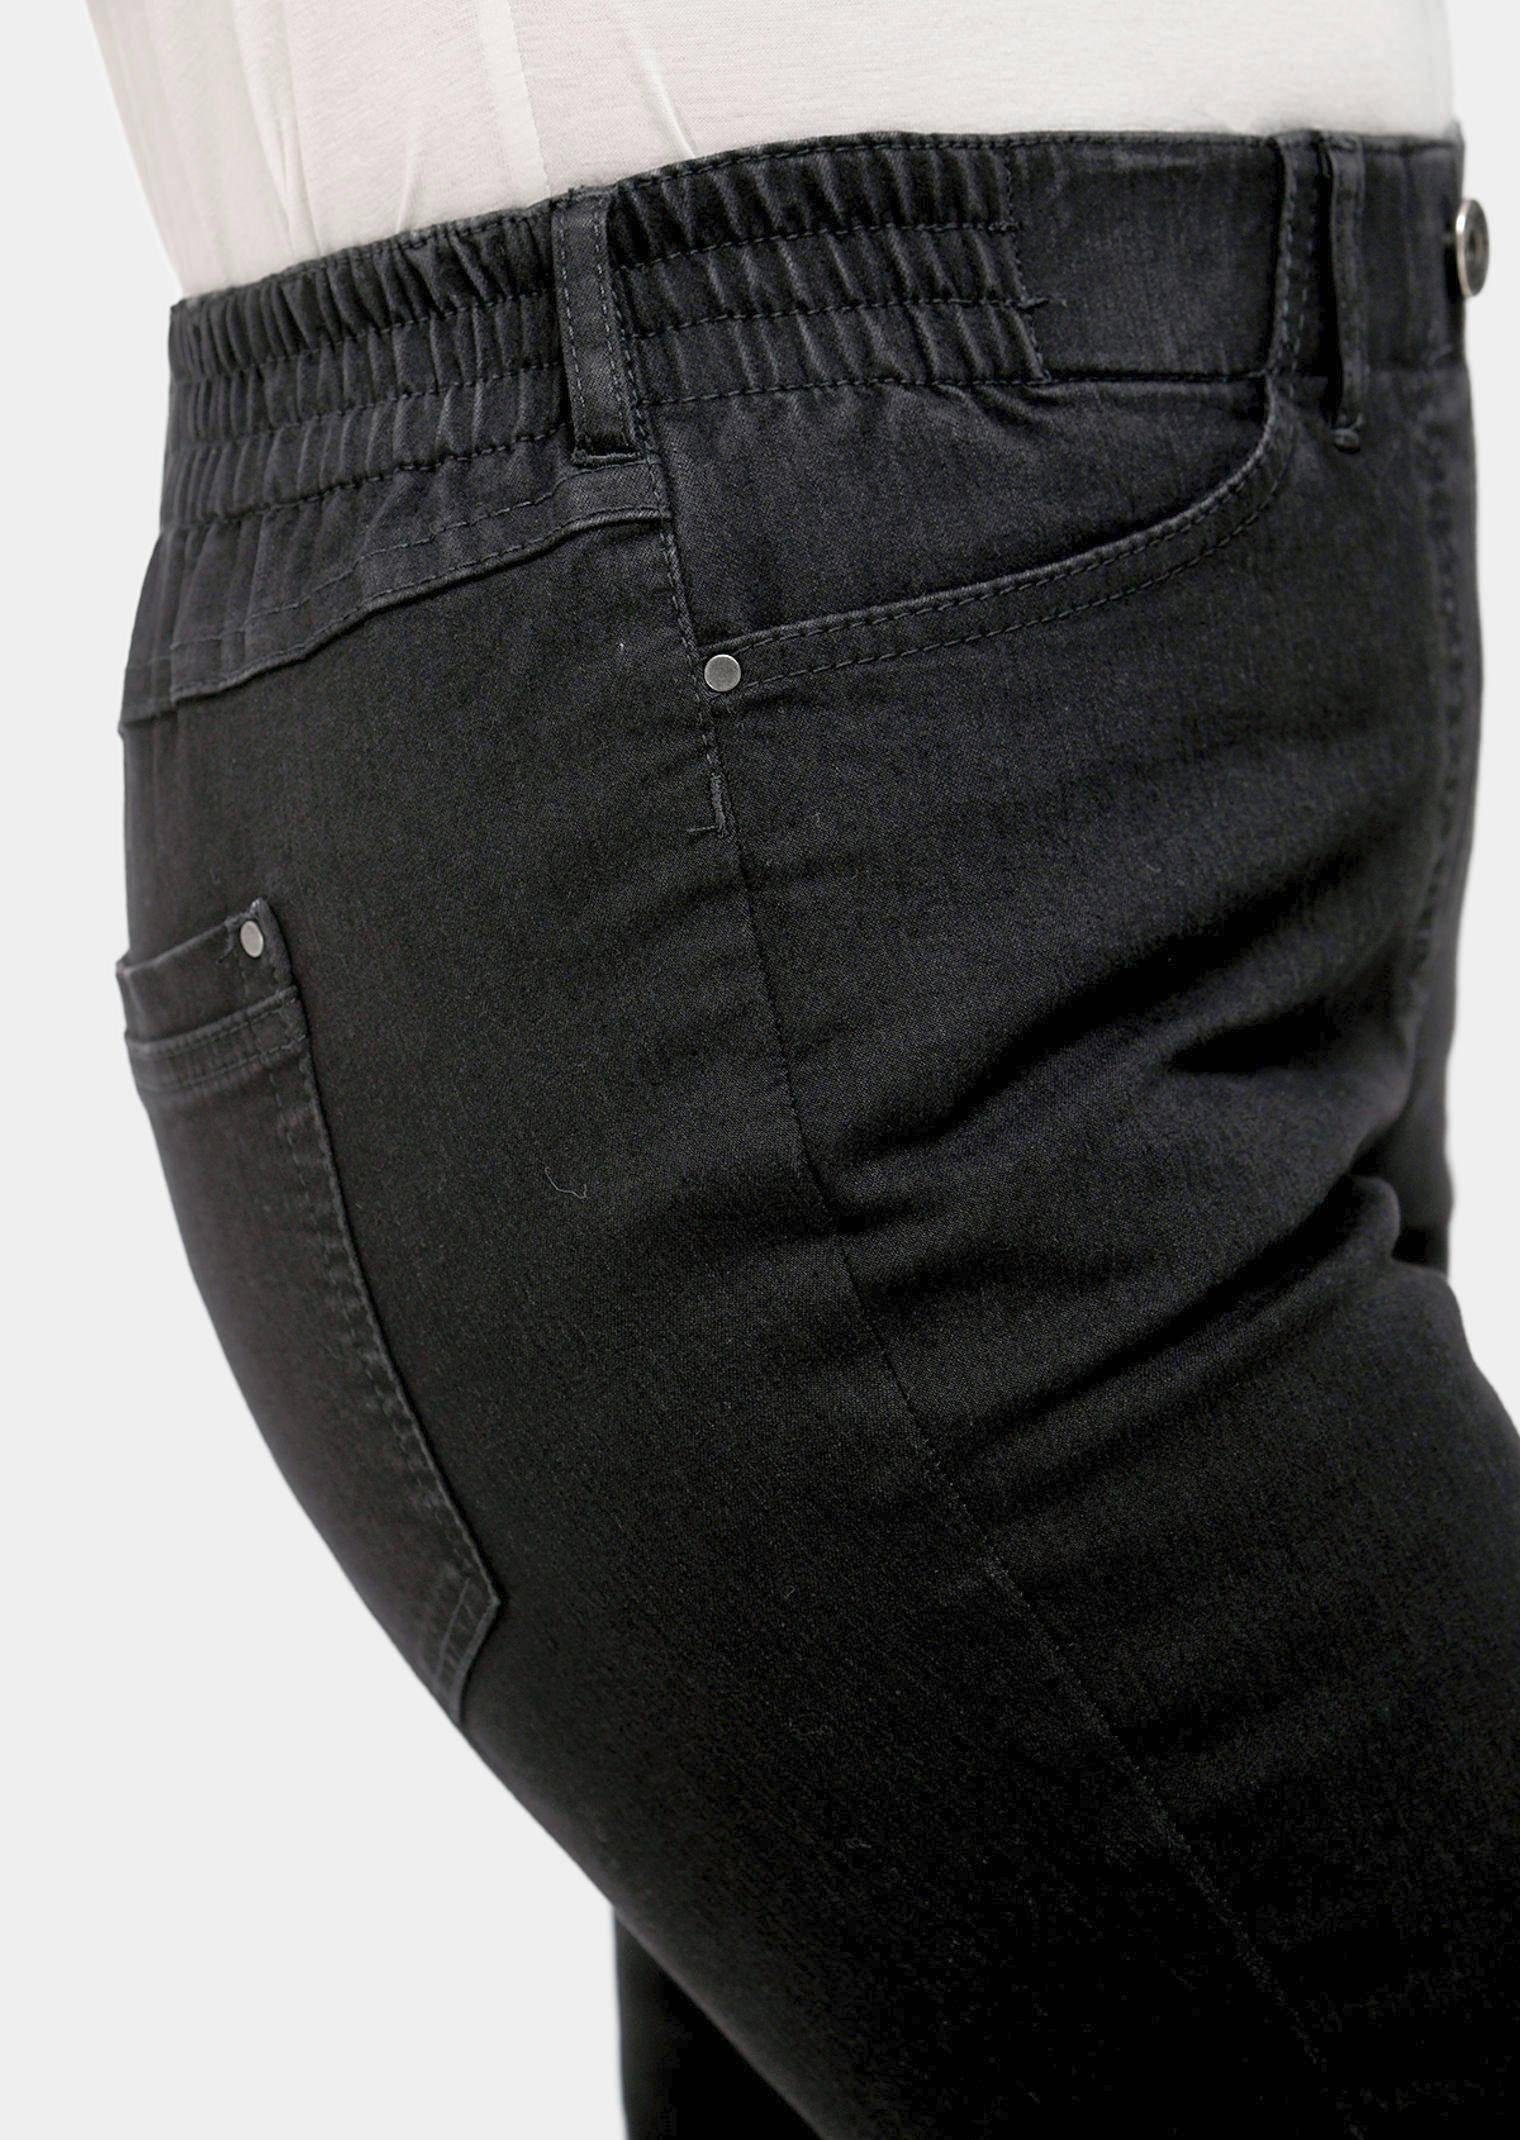 GOLDNER Bequeme Klassische Jeans schwarz MARTHA Kurzgröße: Jeansschlupfhose